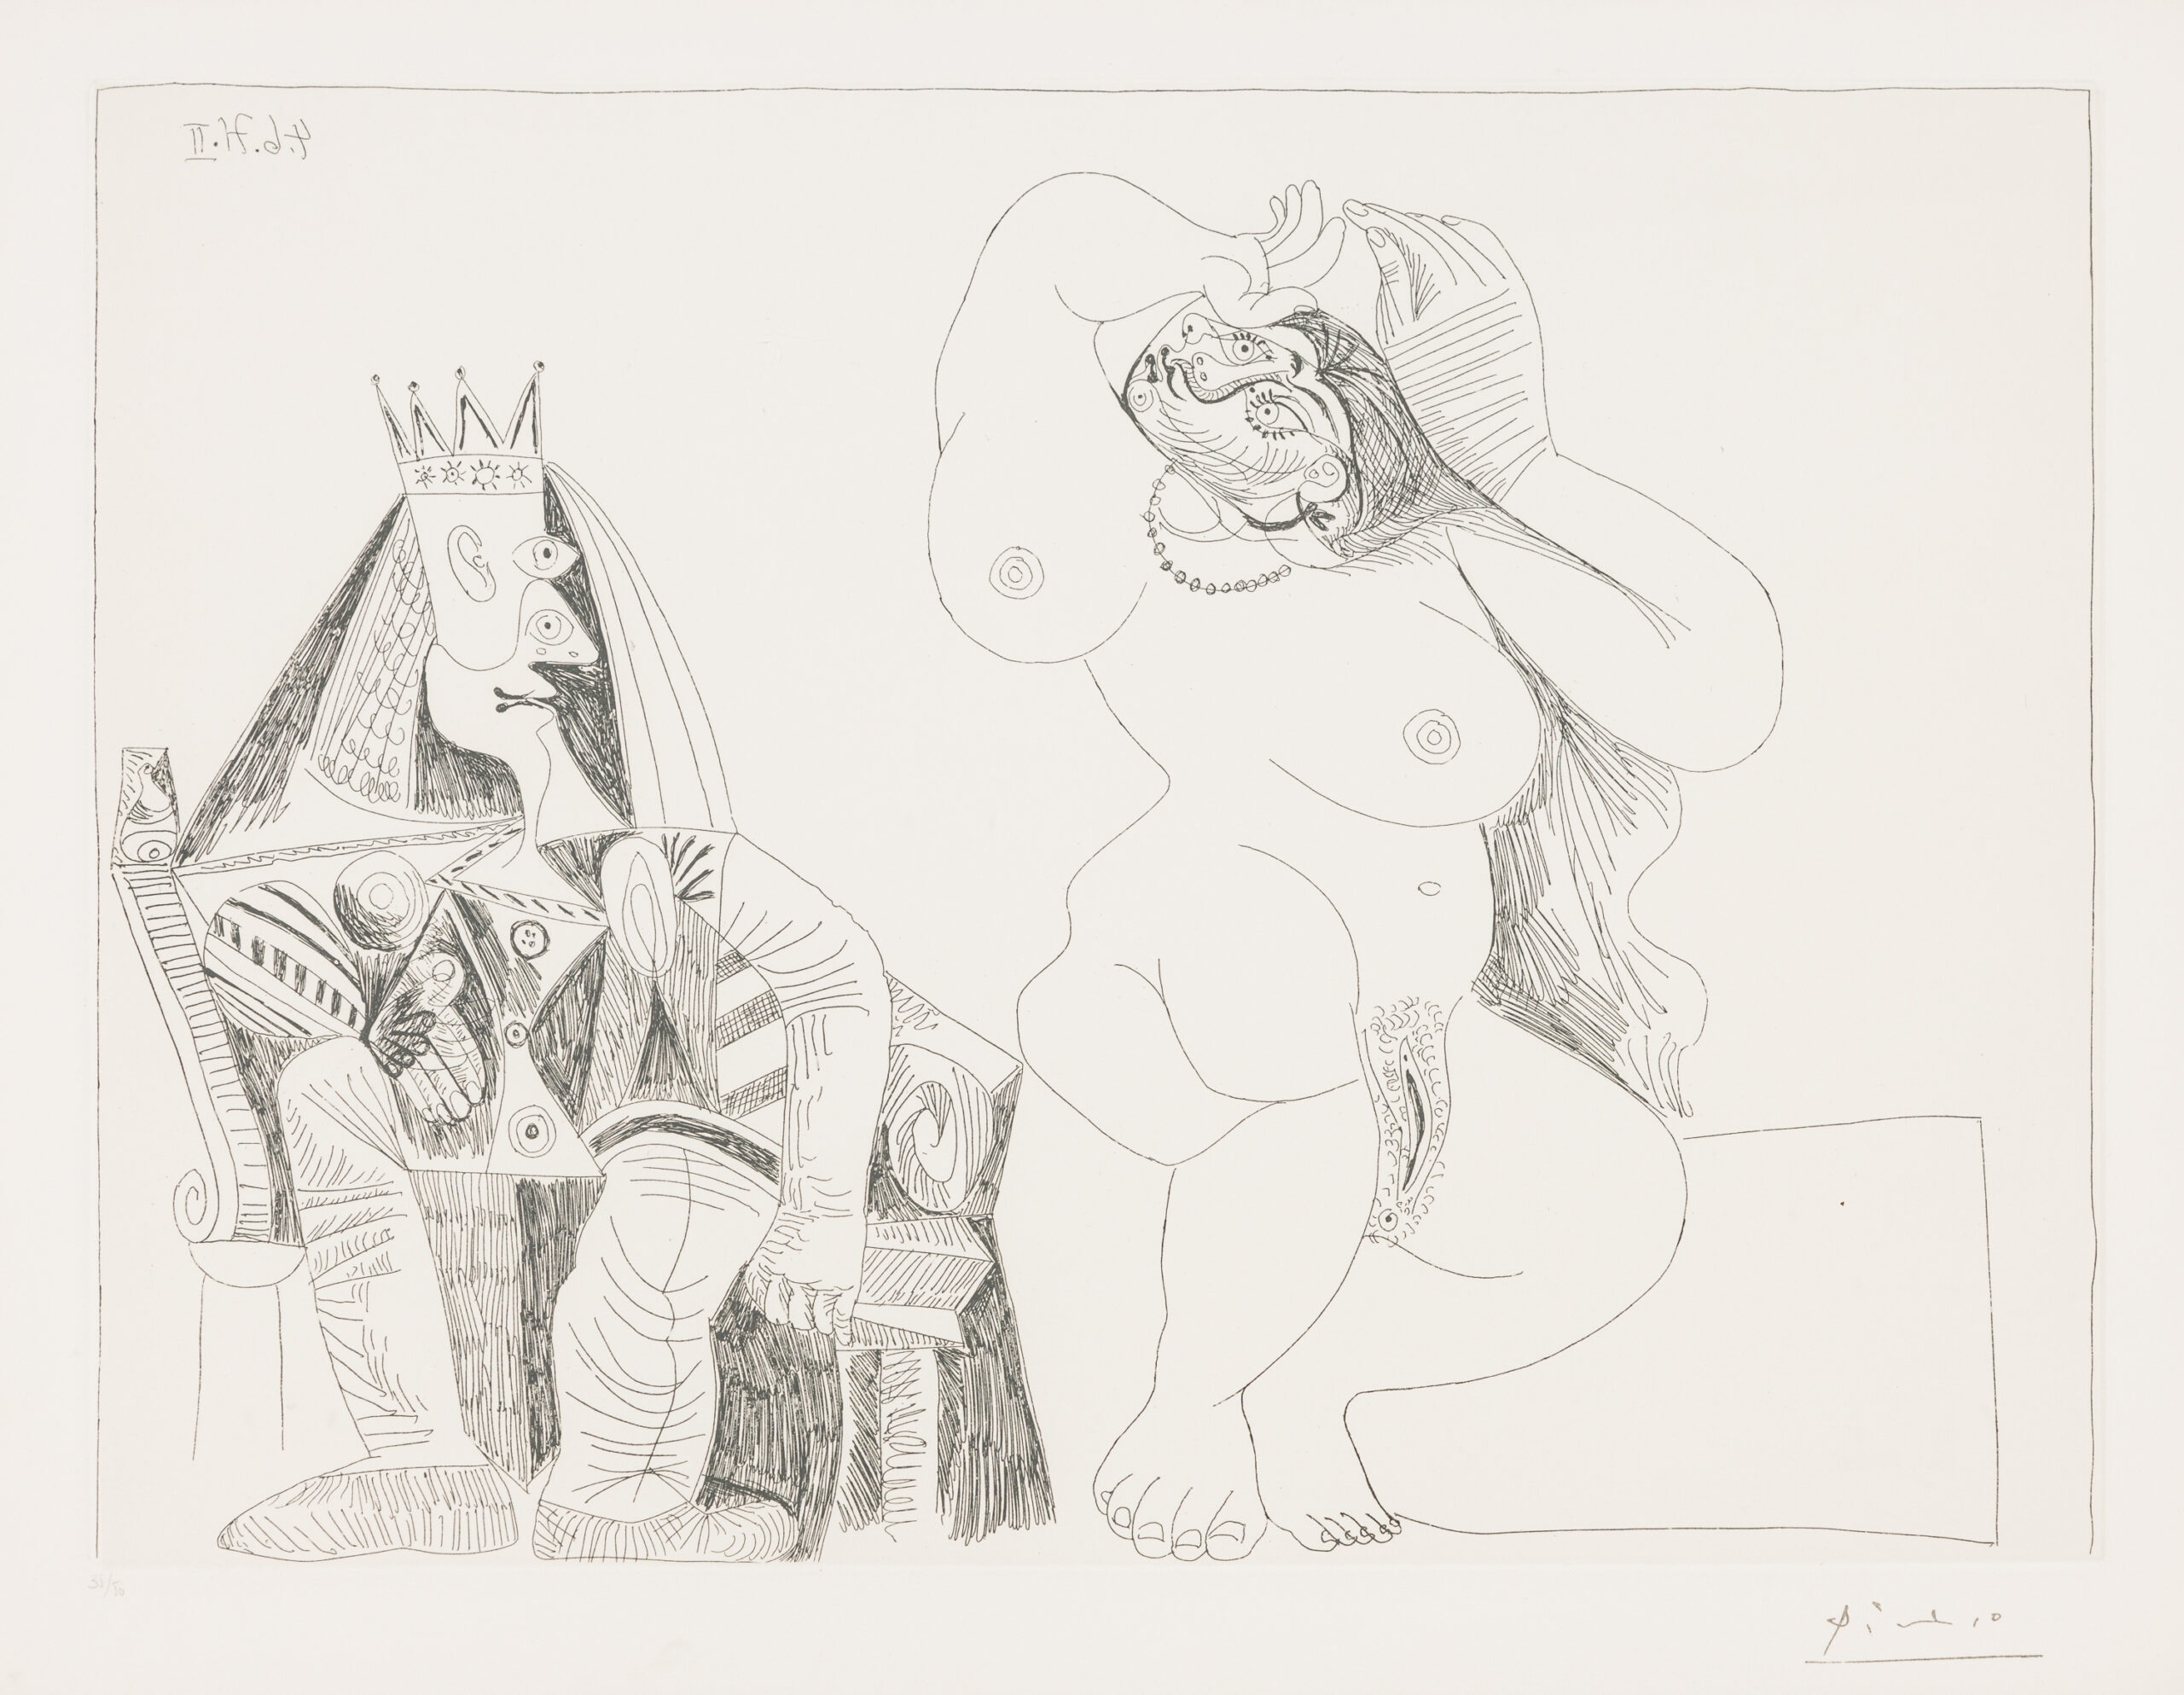 Pablo Picasso, Salomé dansant pour Hérode, 1971, etching, 27,6 x 22,4 in
